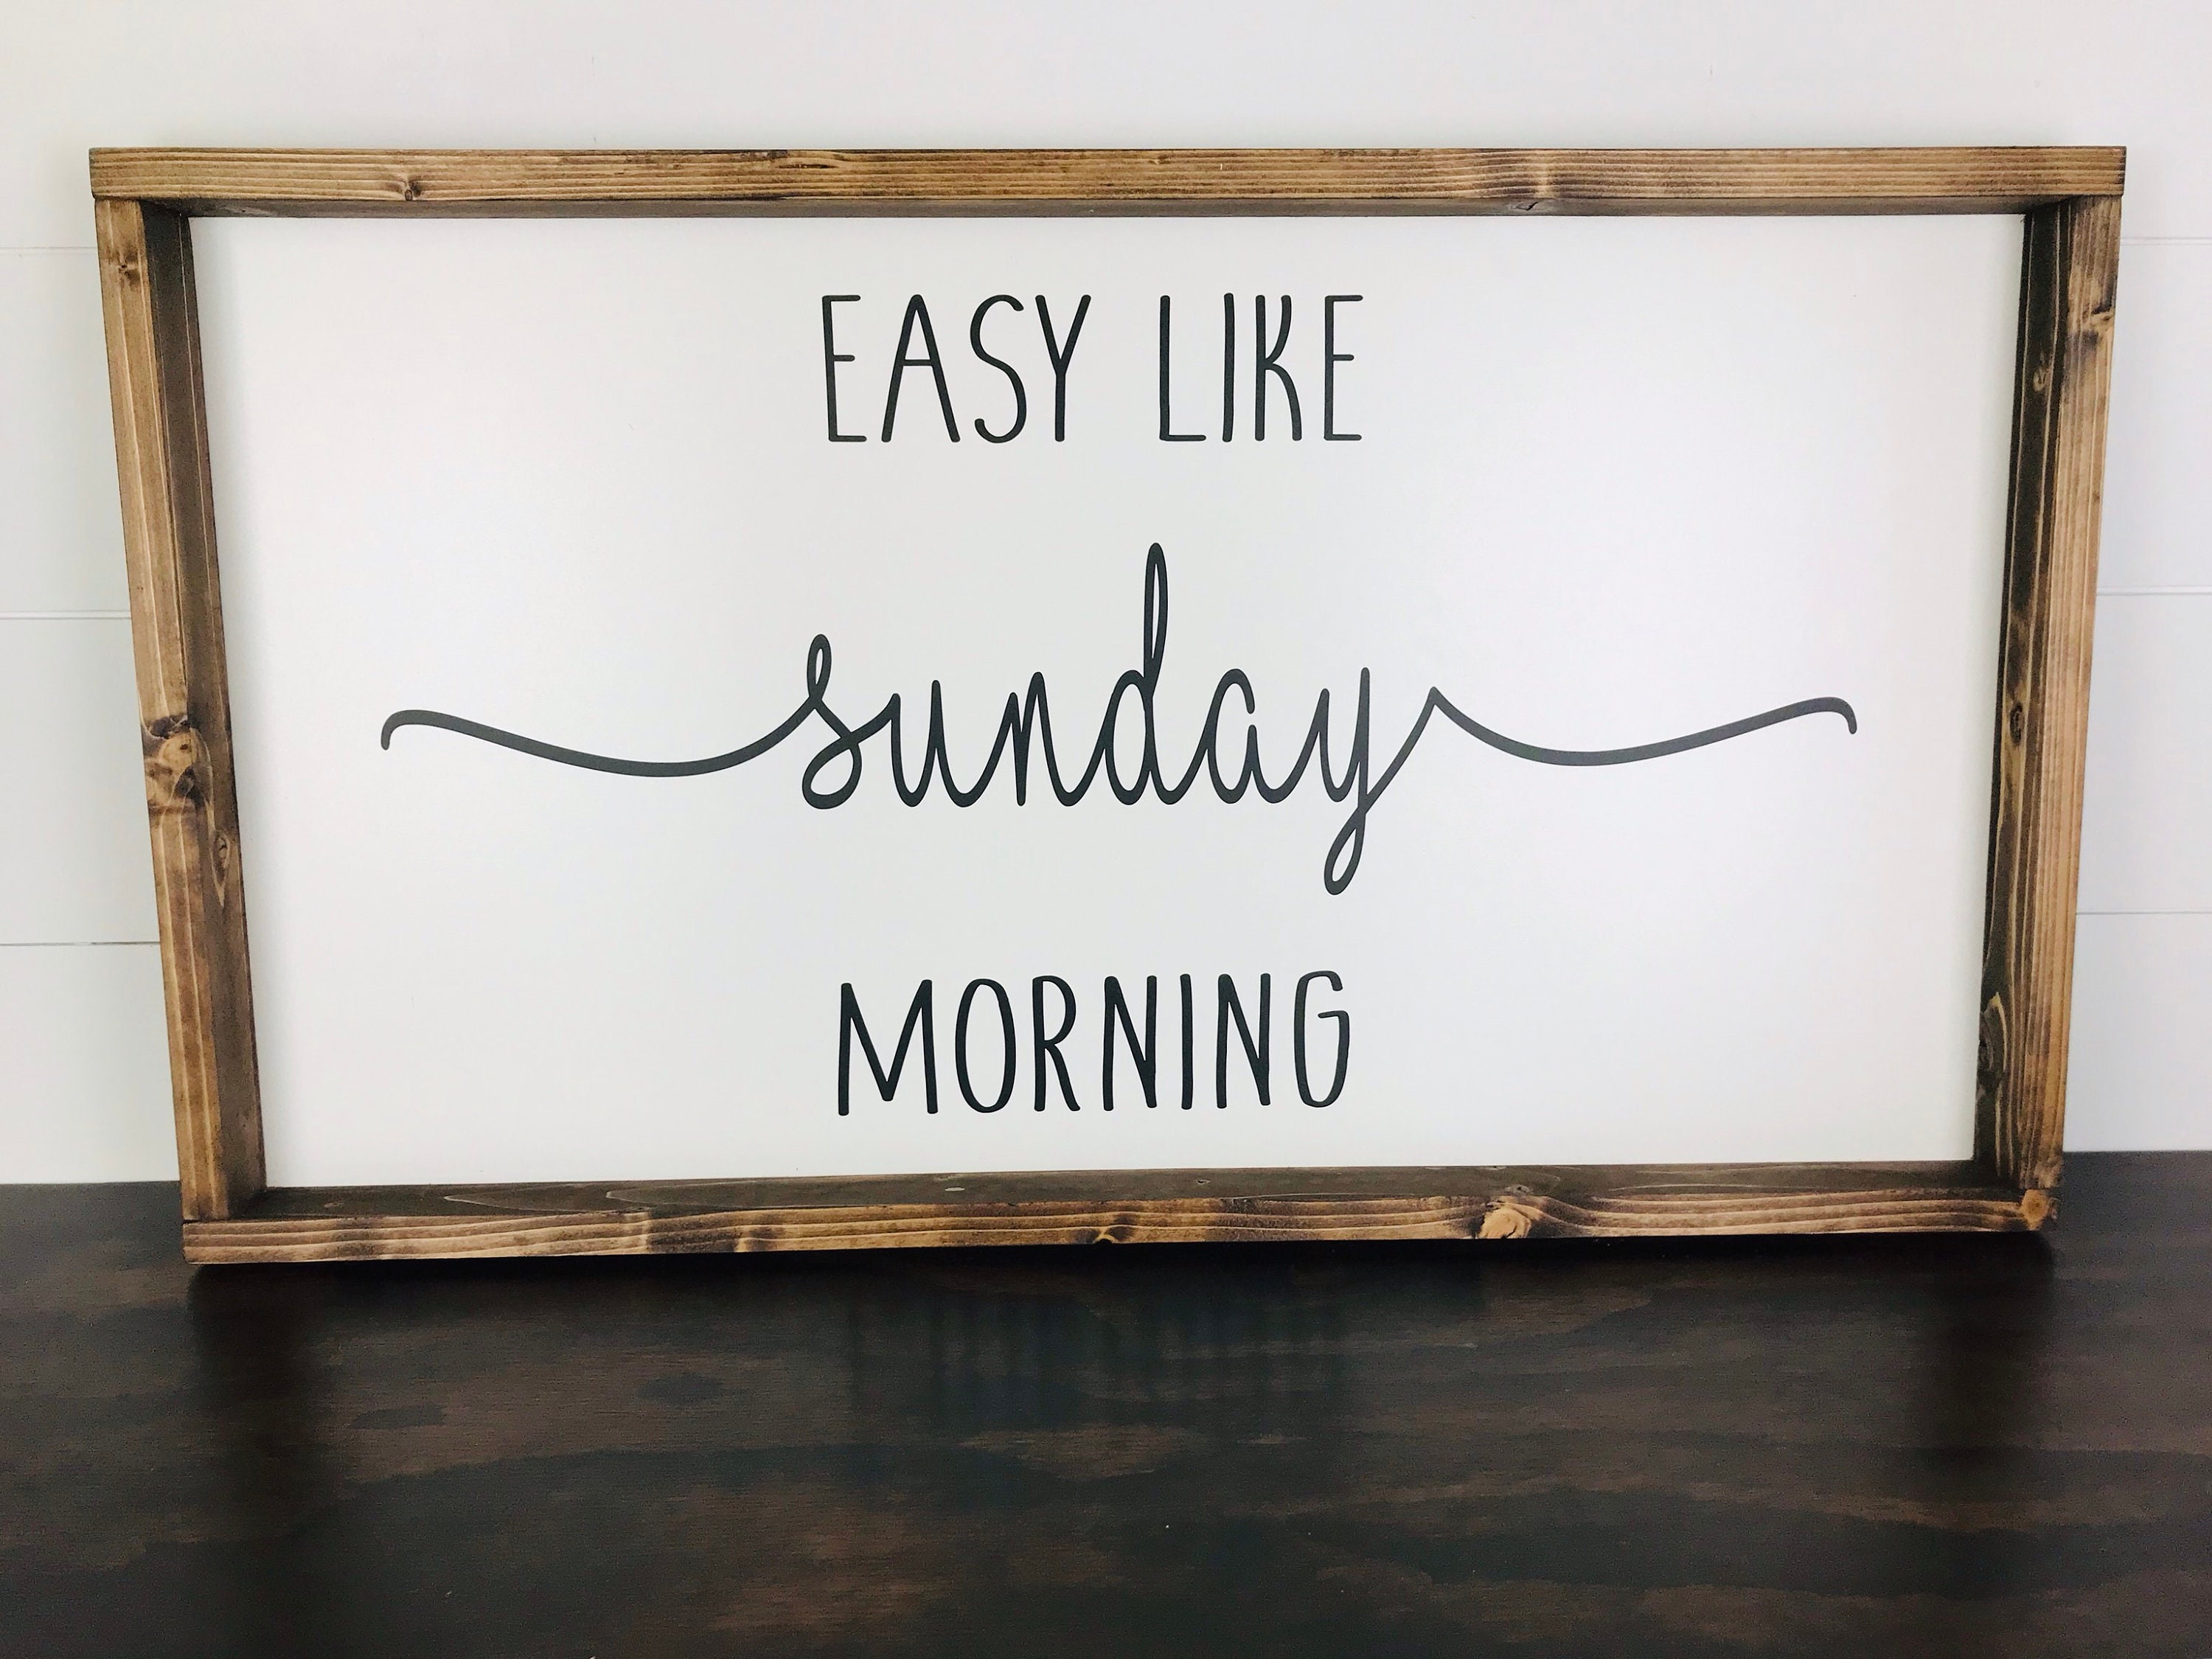 Easy like Sunday morning. Sunday morning Wood. Quote sign.